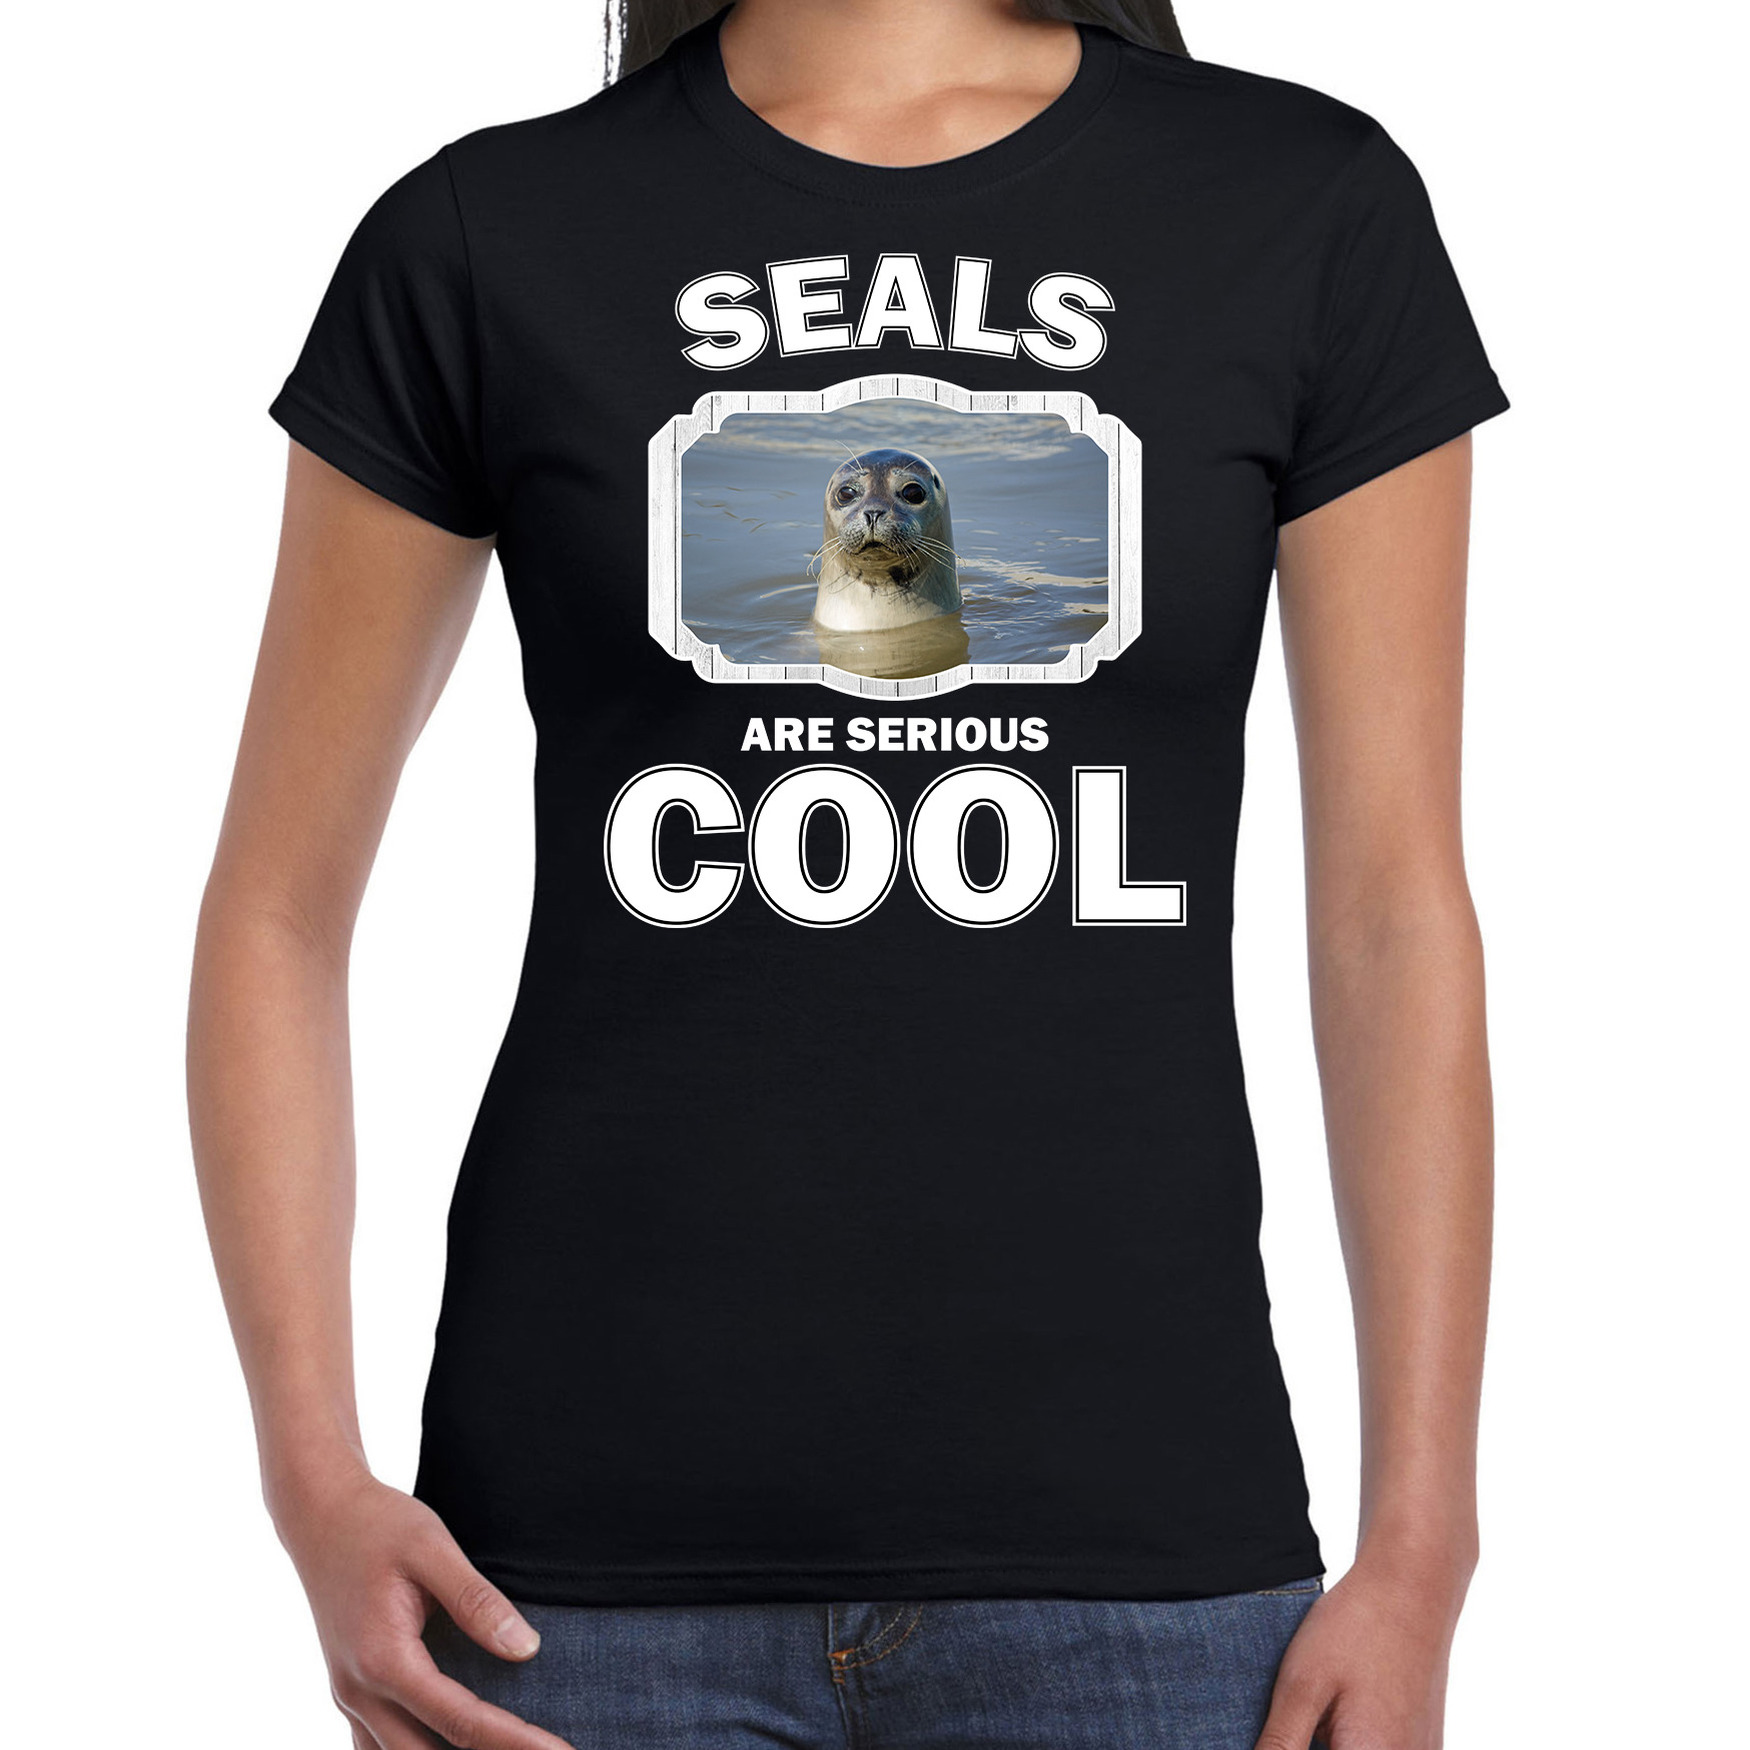 Dieren grijze zeehond t-shirt zwart dames seals are cool shirt